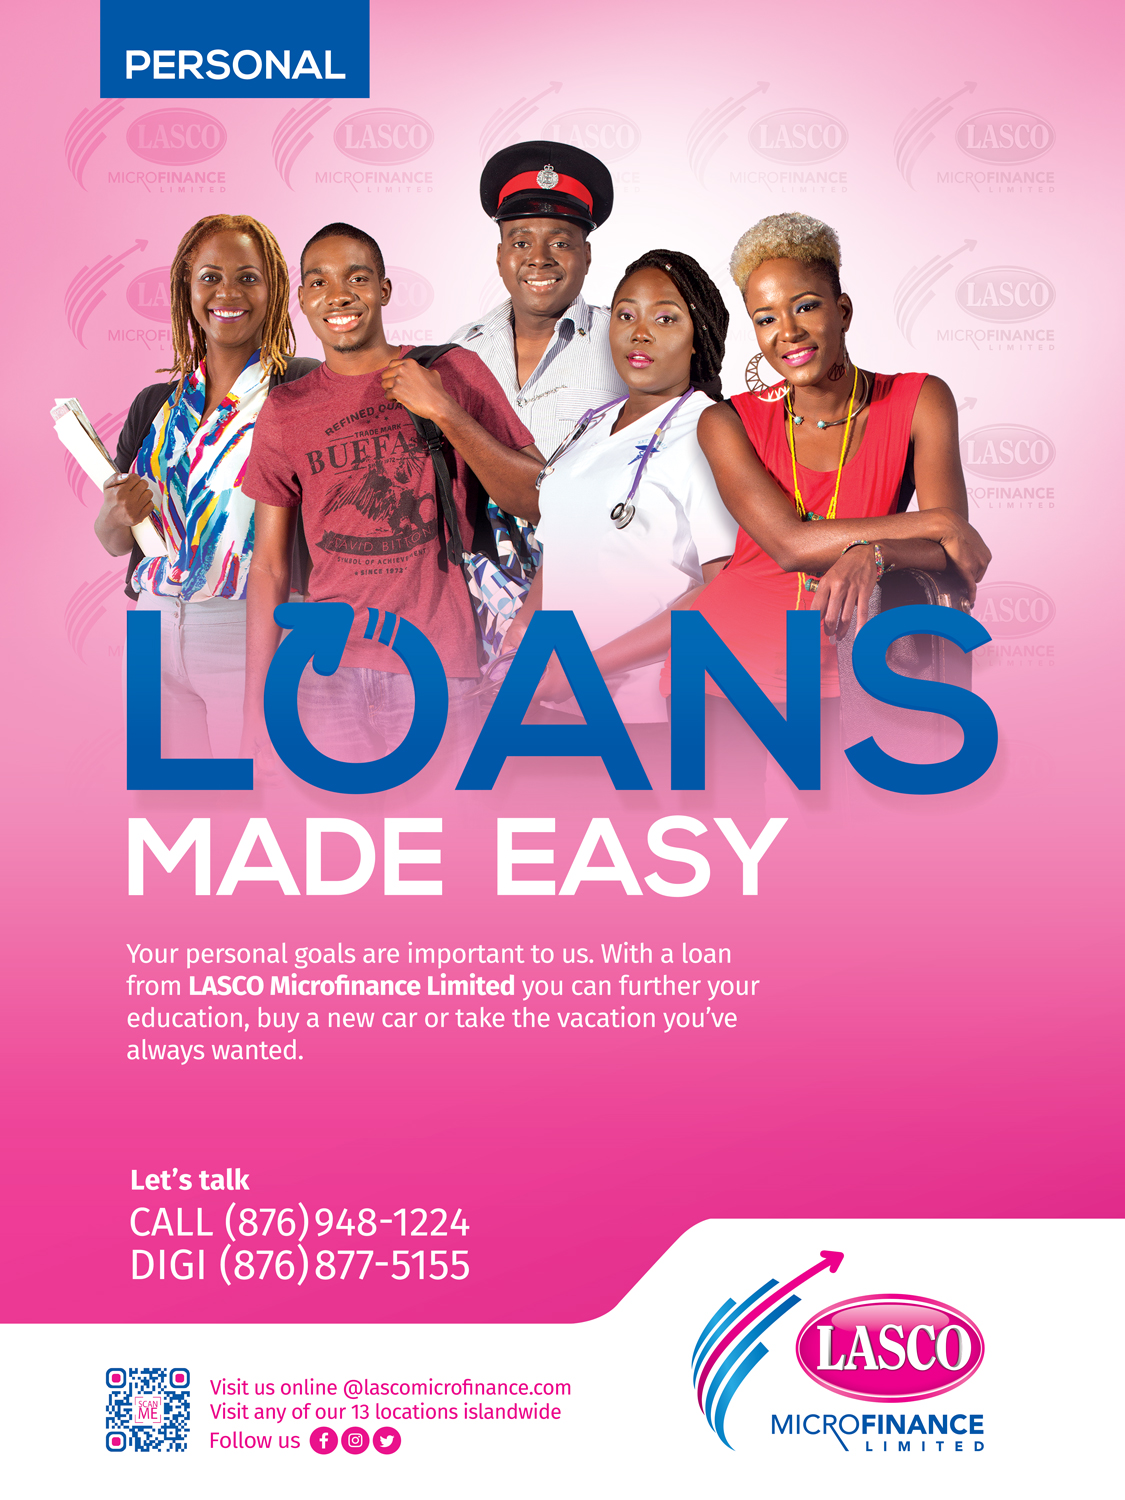 LASCO Microfinance Ltd - Loans